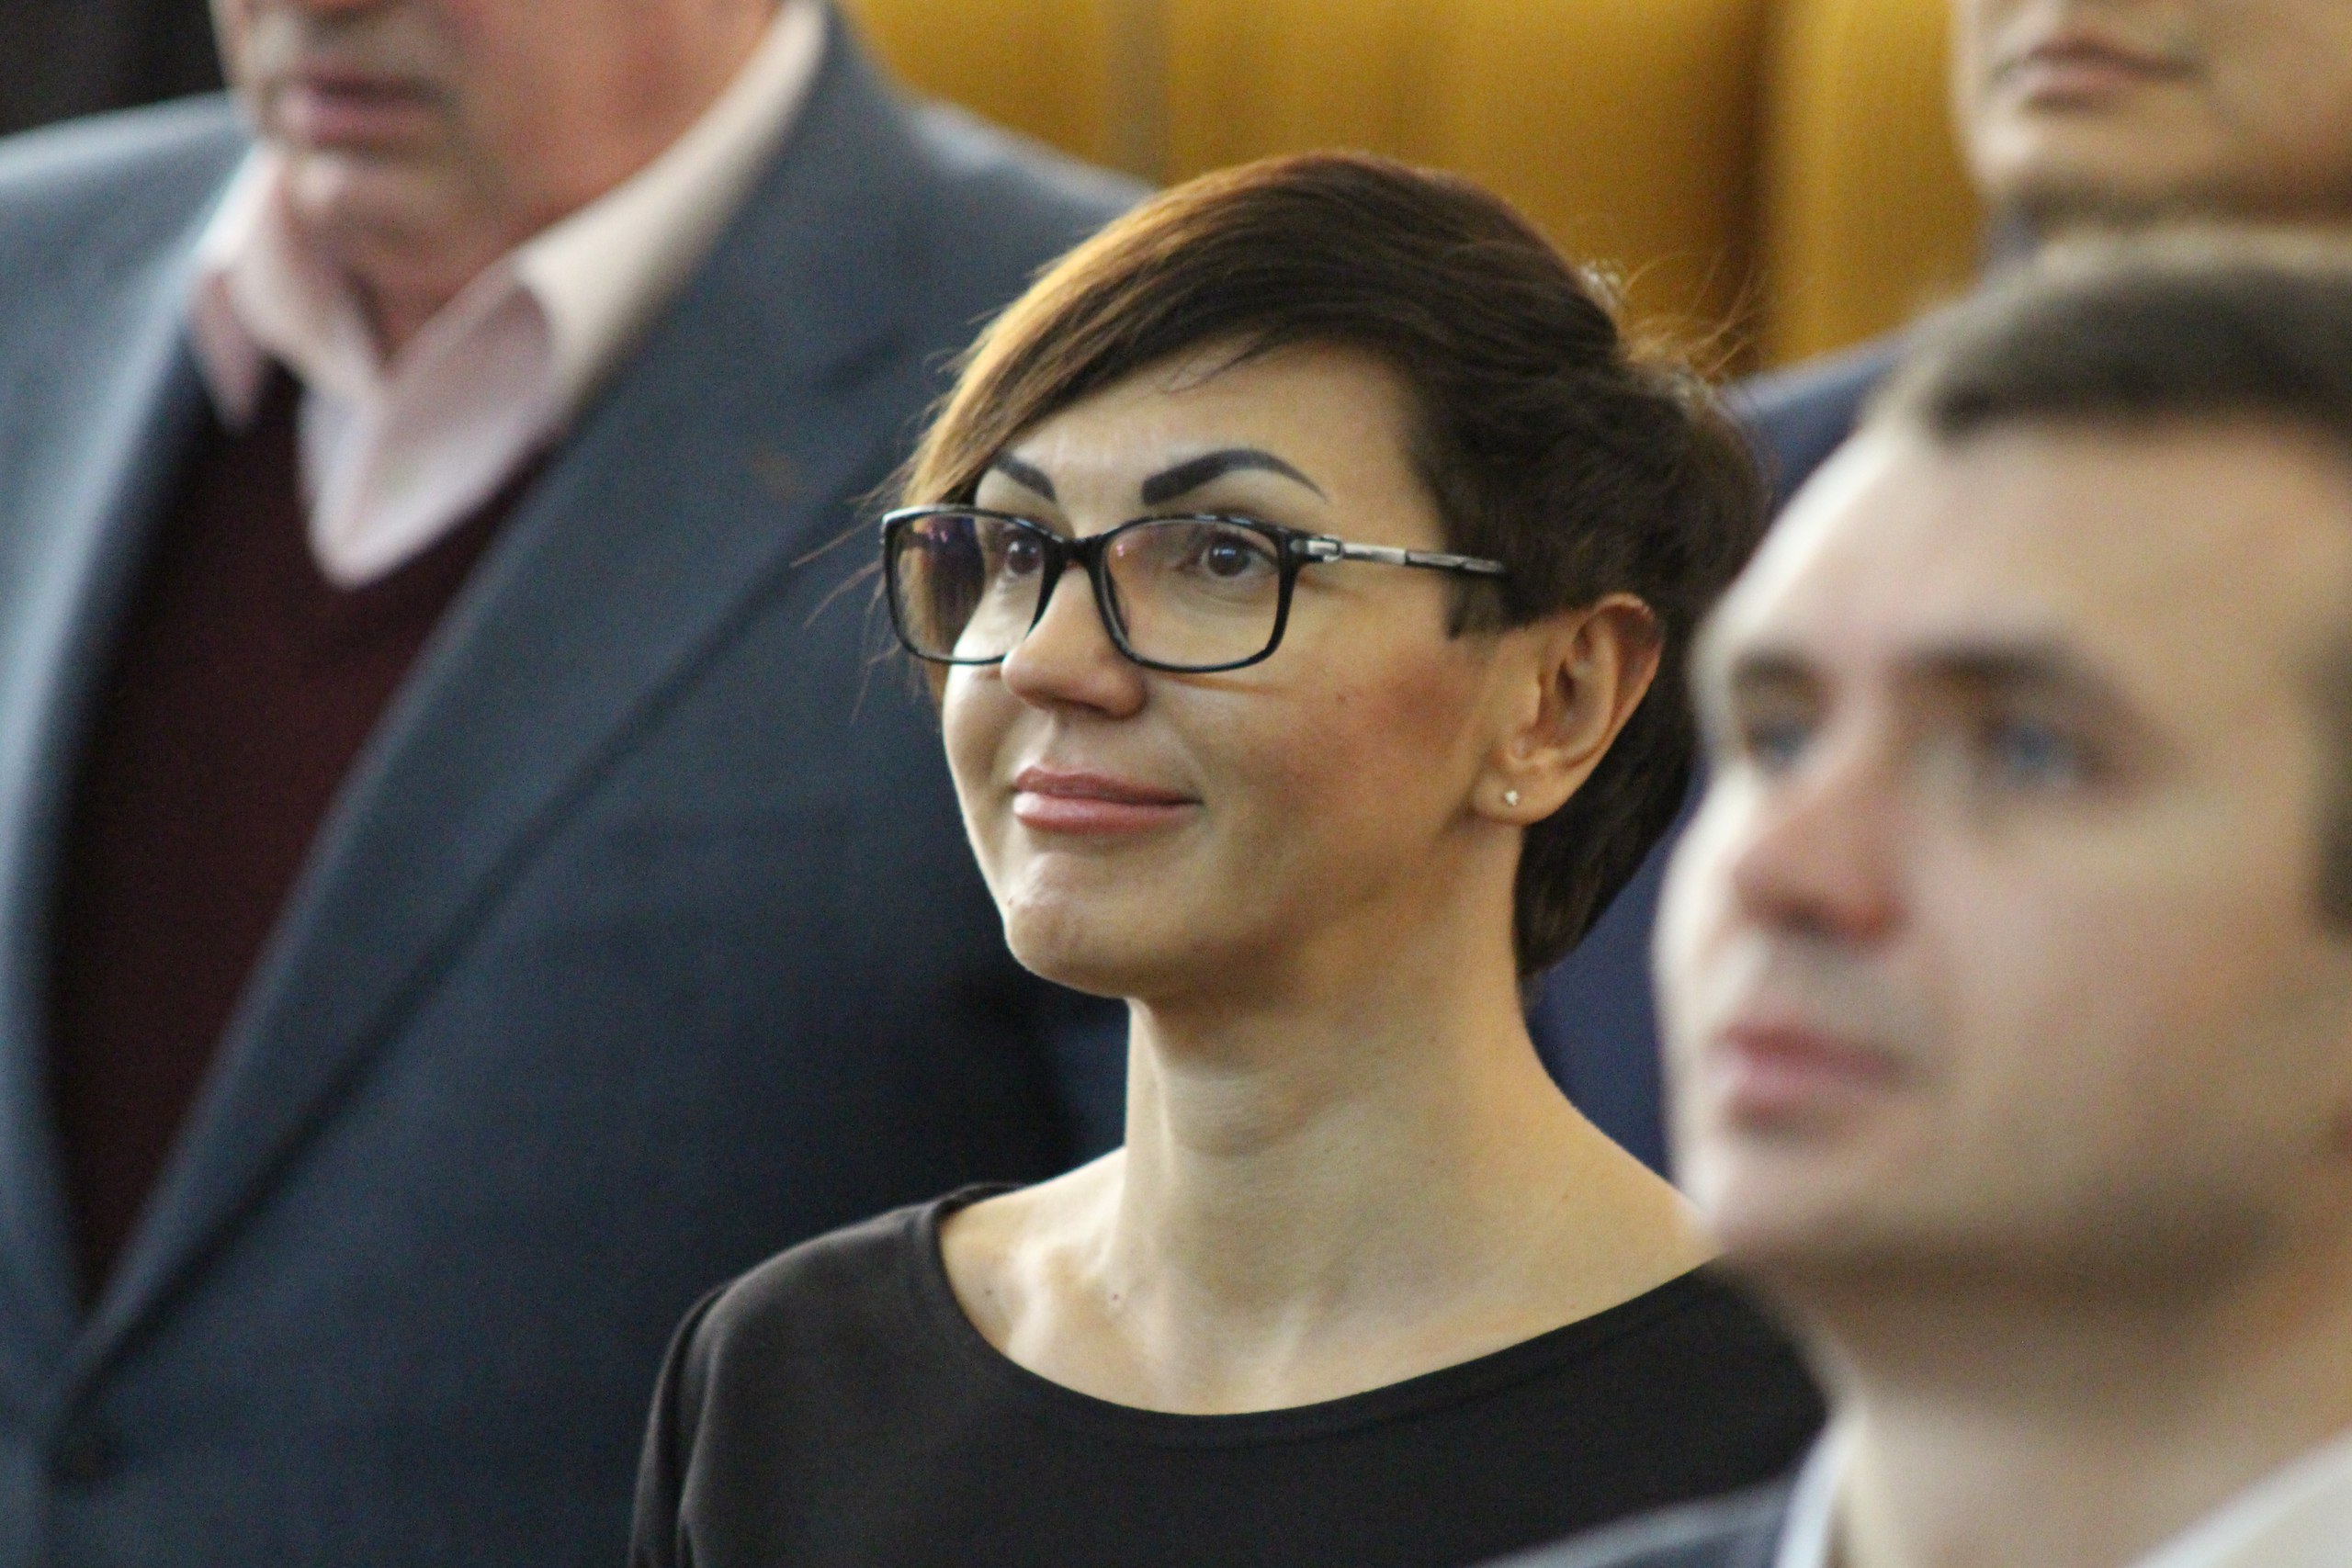 Як на сесії Миколаївської облради затверджували бюджет та "виганяли" депутатів